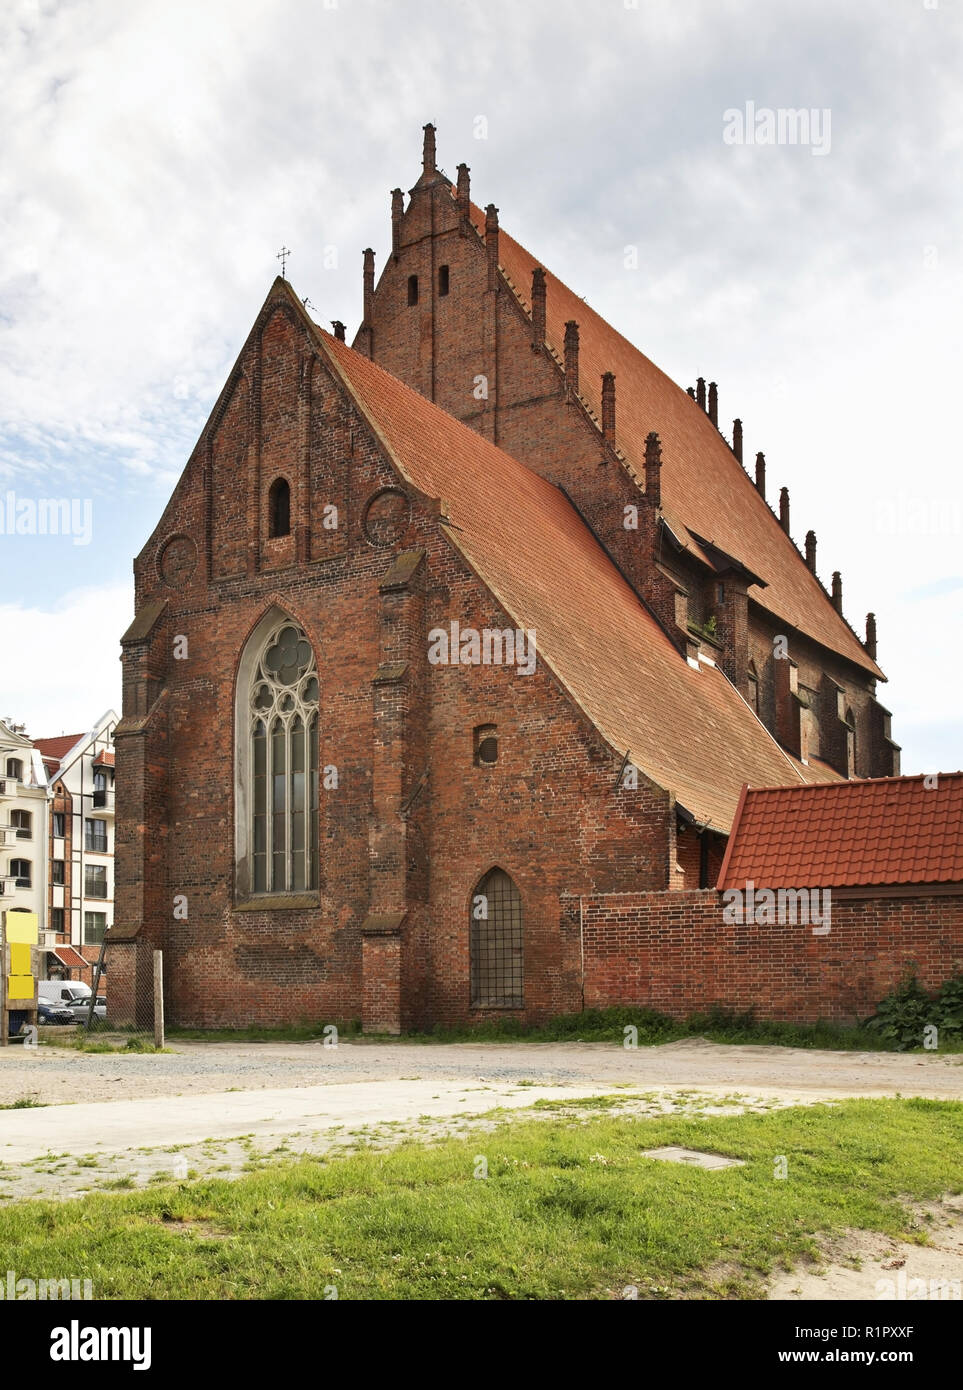 Former Dominican Monastery in Elblag. Warmian-Masurian voivodeship. Poland Stock Photo